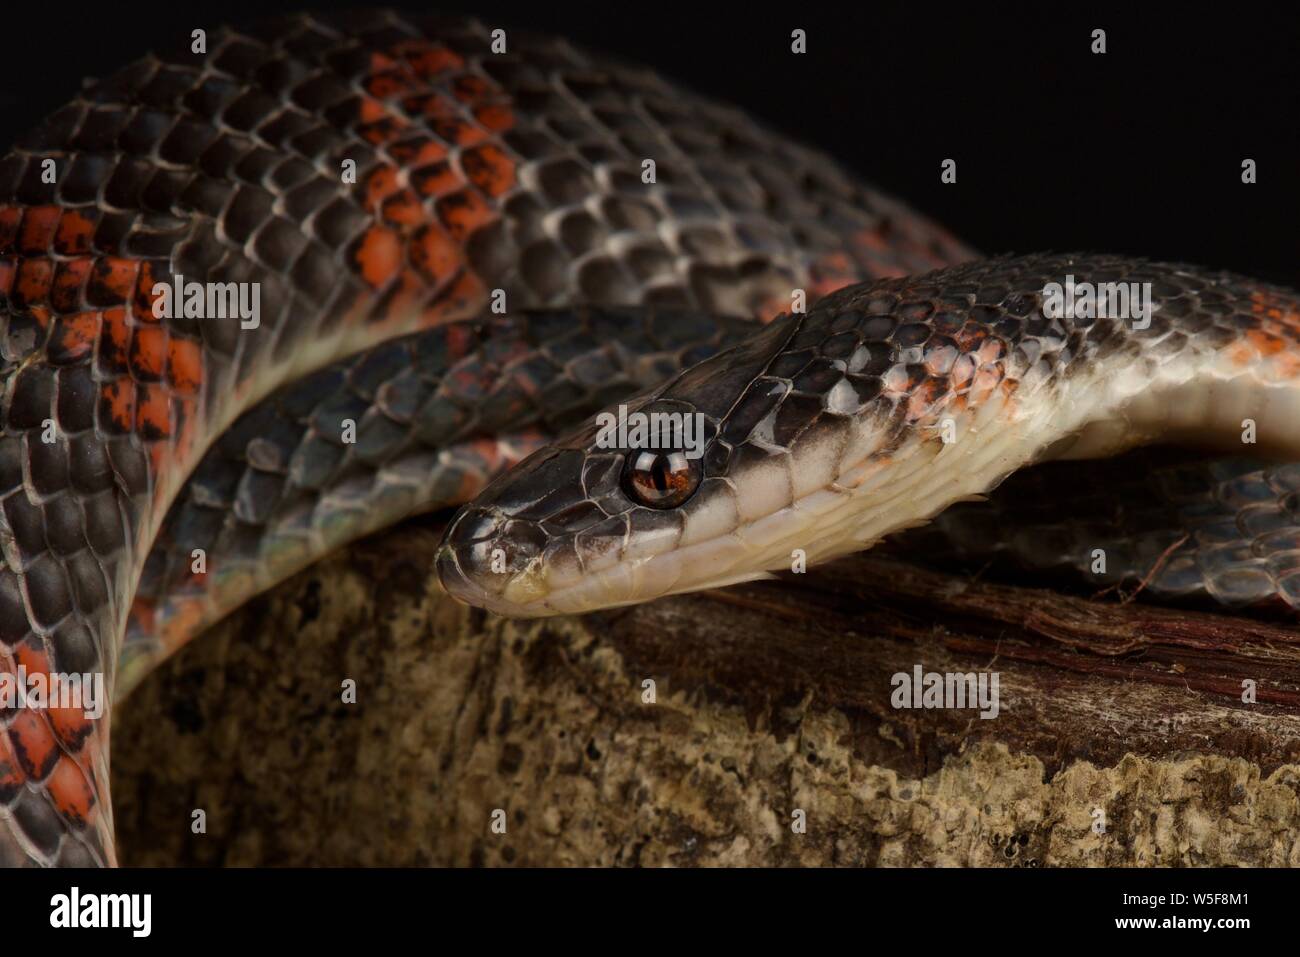 False coral snake (Oxyrhopus petola) Stock Photo